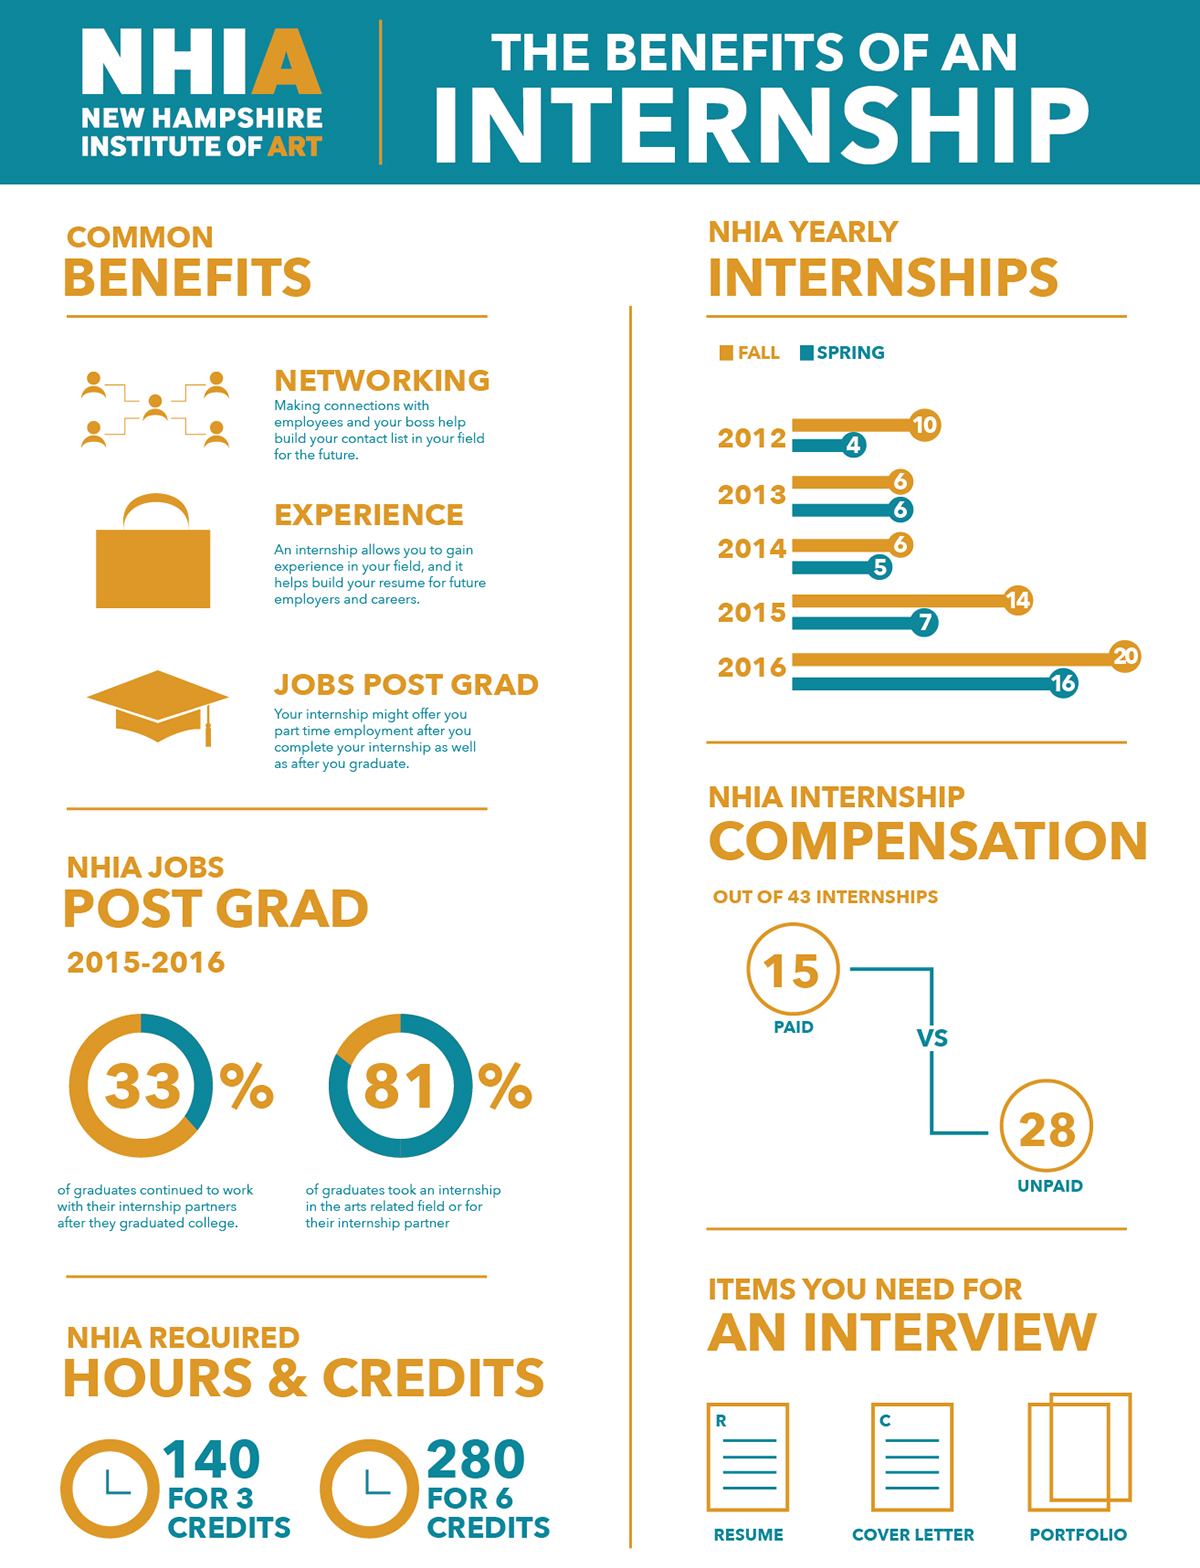 #graphic design #Design #infographic #internship #NHIA